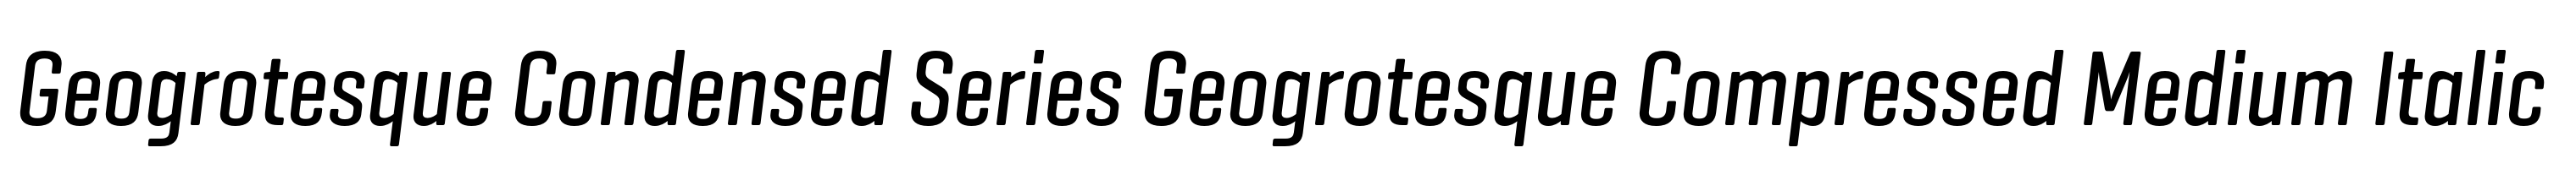 Geogrotesque Condensed Series Geogrotesque Compressed Medium Italic